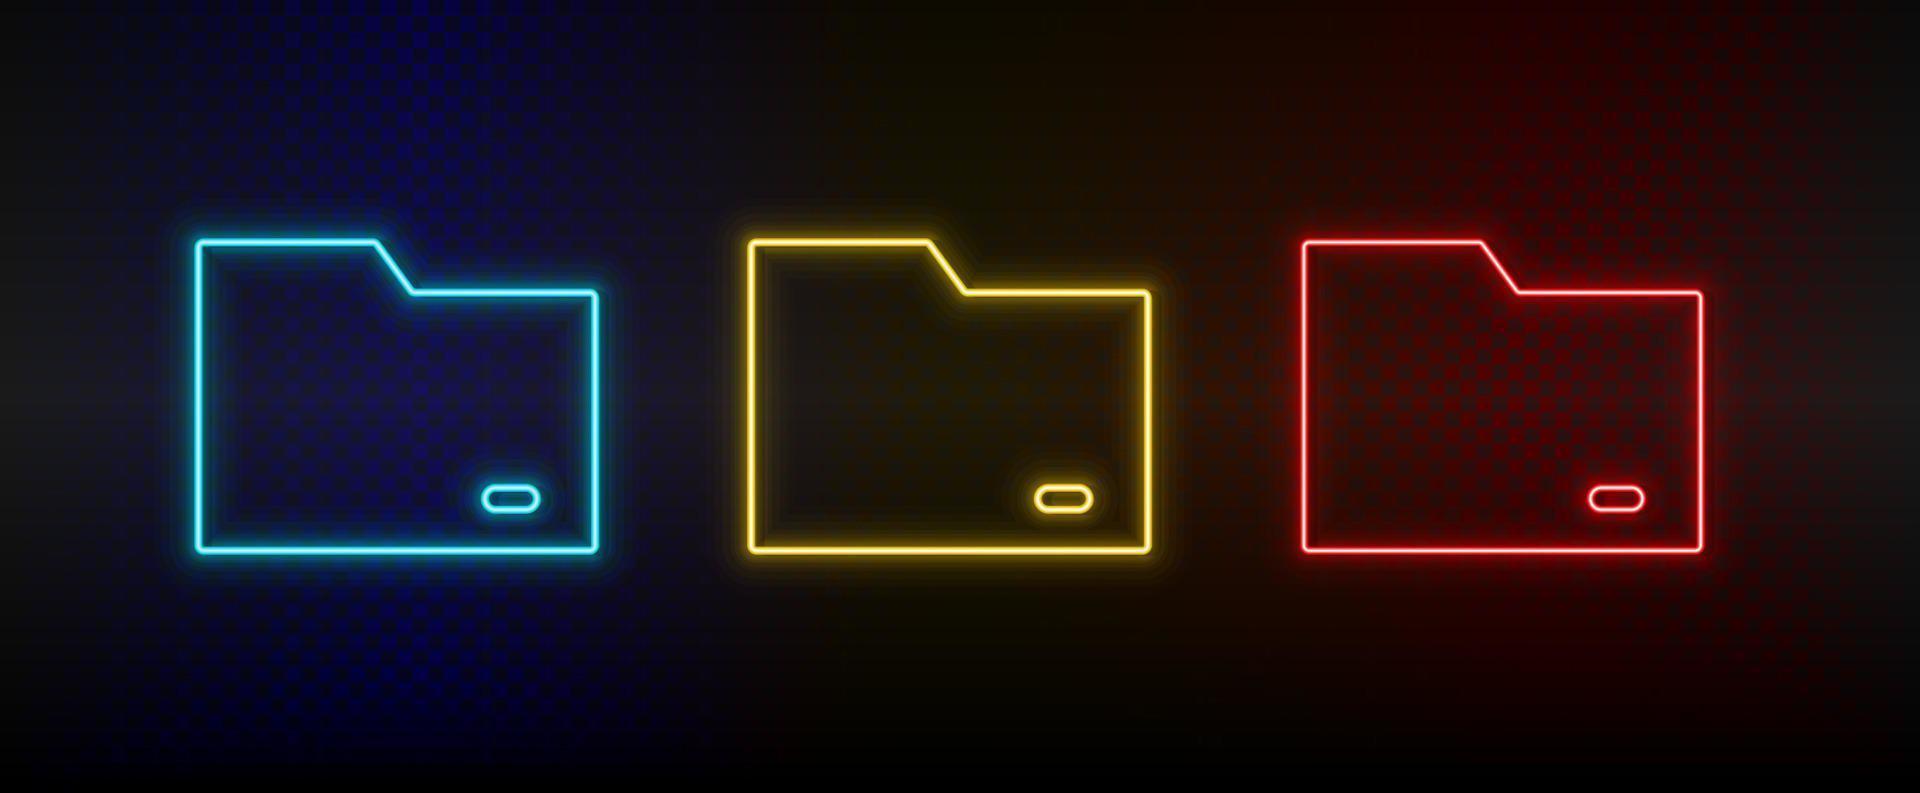 Neon- Symbol einstellen Ordner. einstellen von Rot, Blau, Gelb Neon- Vektor Symbol auf dunkel transparent Hintergrund